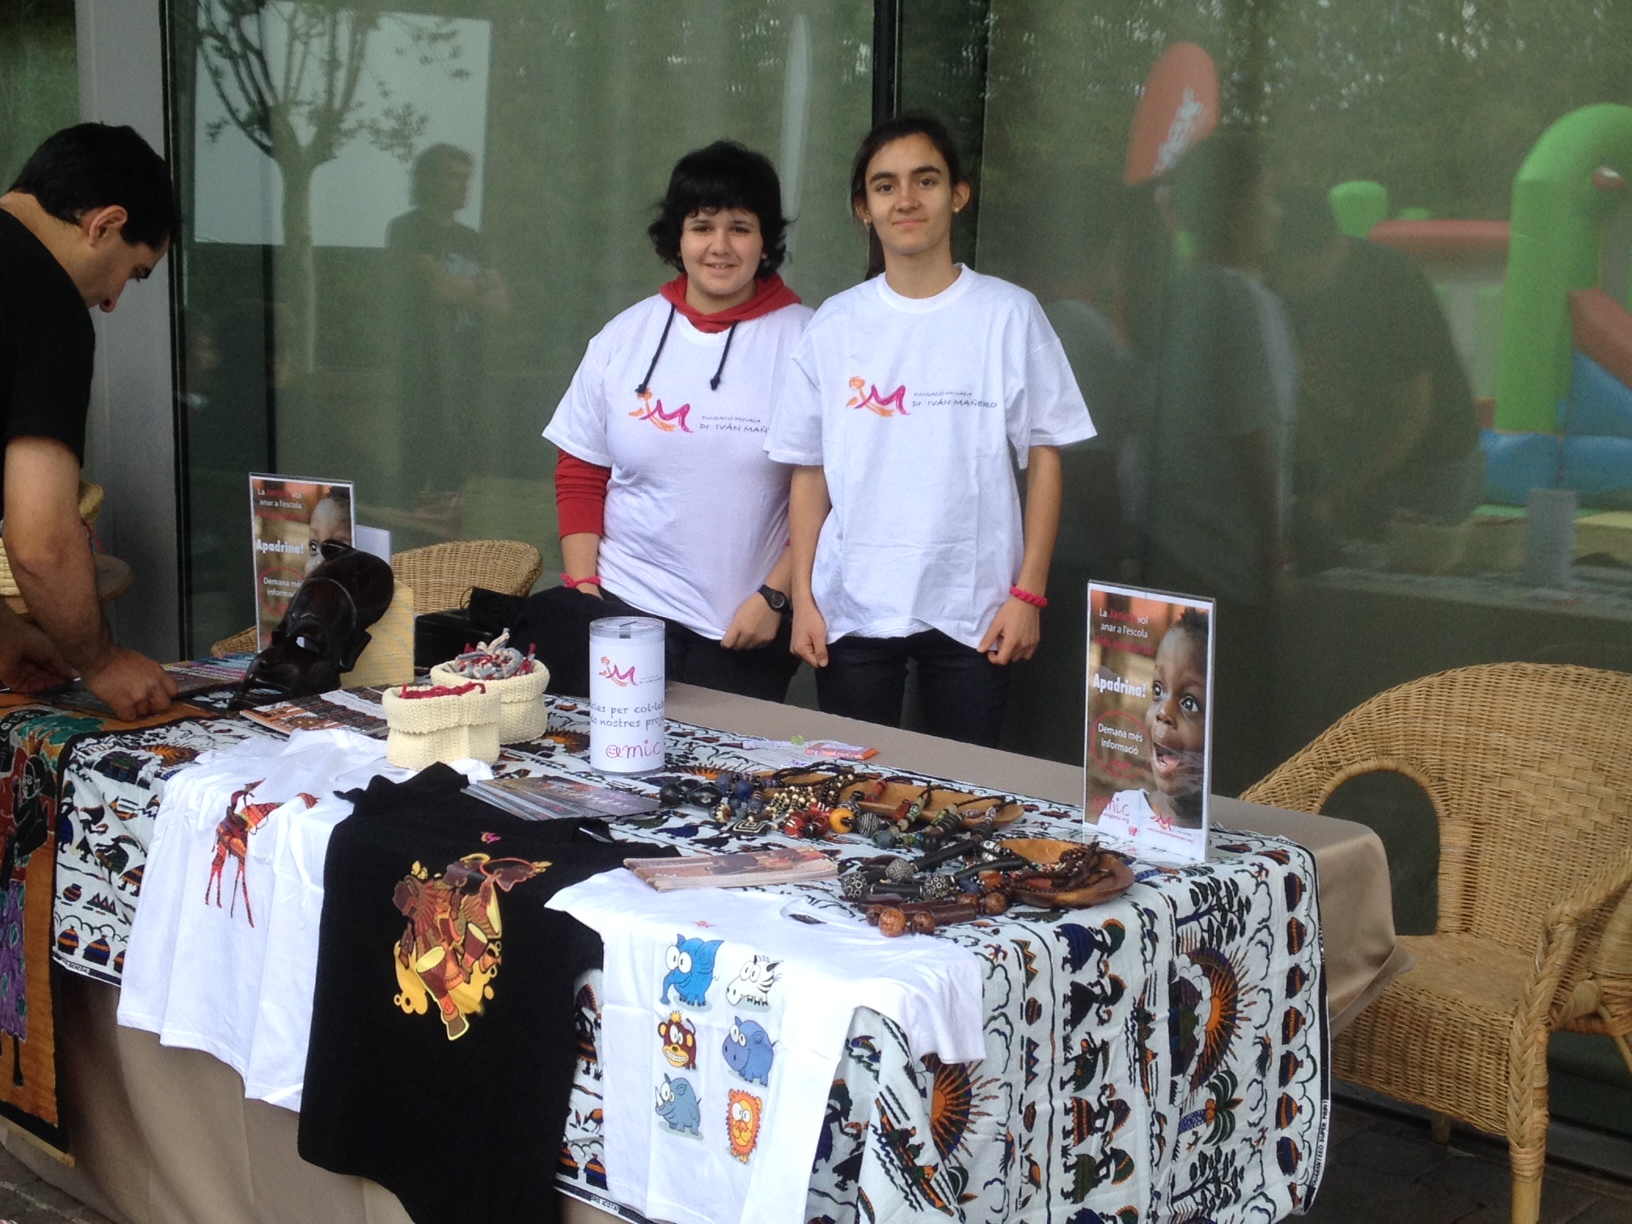 Marta y Ariadna, nuestras jóvenes voluntarias en el taller de pulseras solidarias.